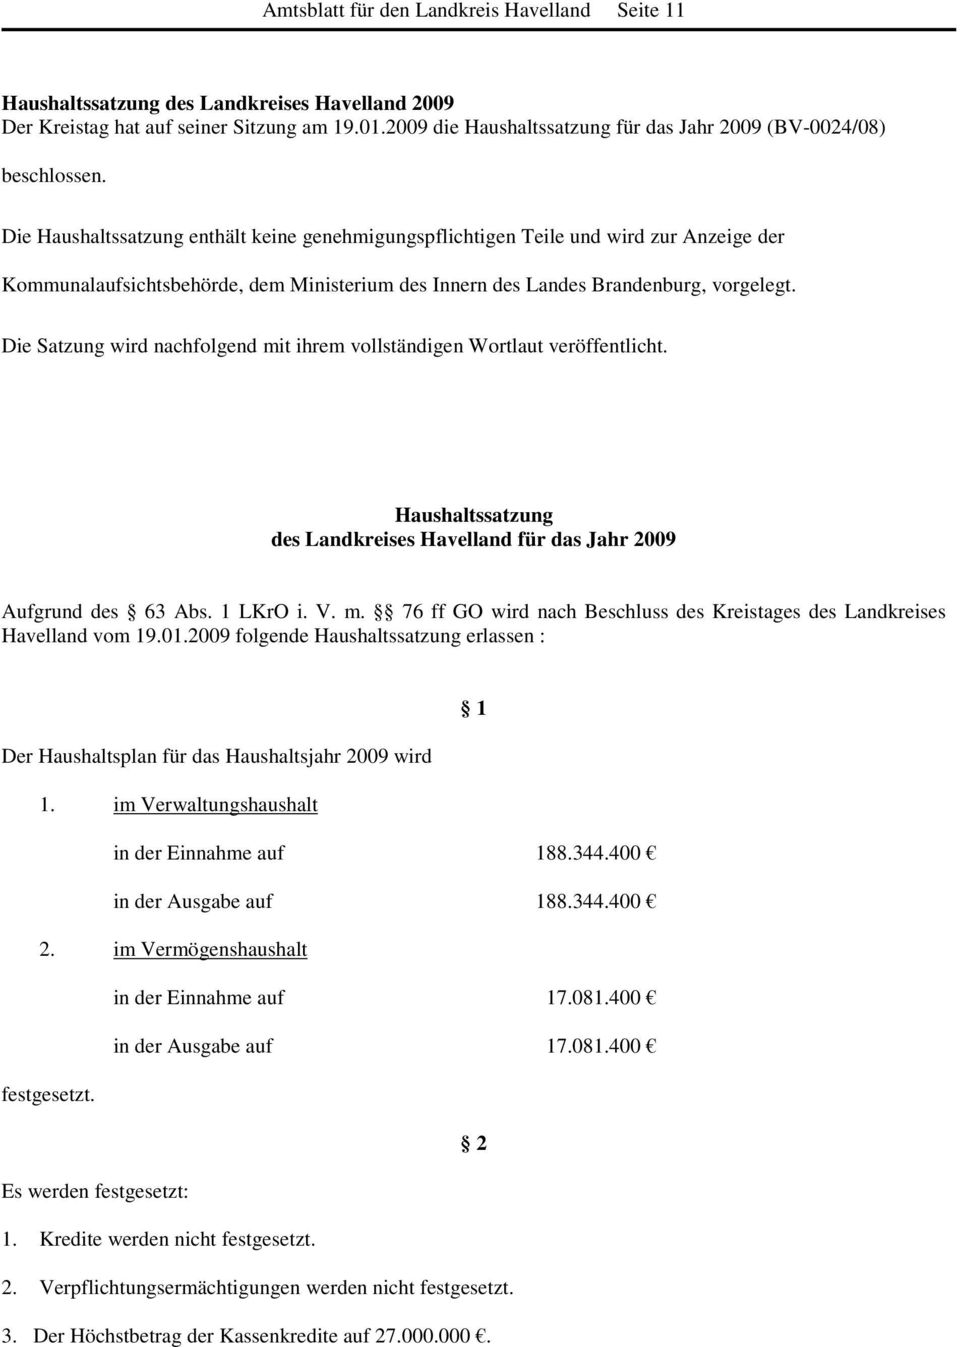 Die Haushaltssatzung enthält keine genehmigungspflichtigen Teile und wird zur Anzeige der Kommunalaufsichtsbehörde, dem Ministerium des Innern des Landes Brandenburg, vorgelegt.